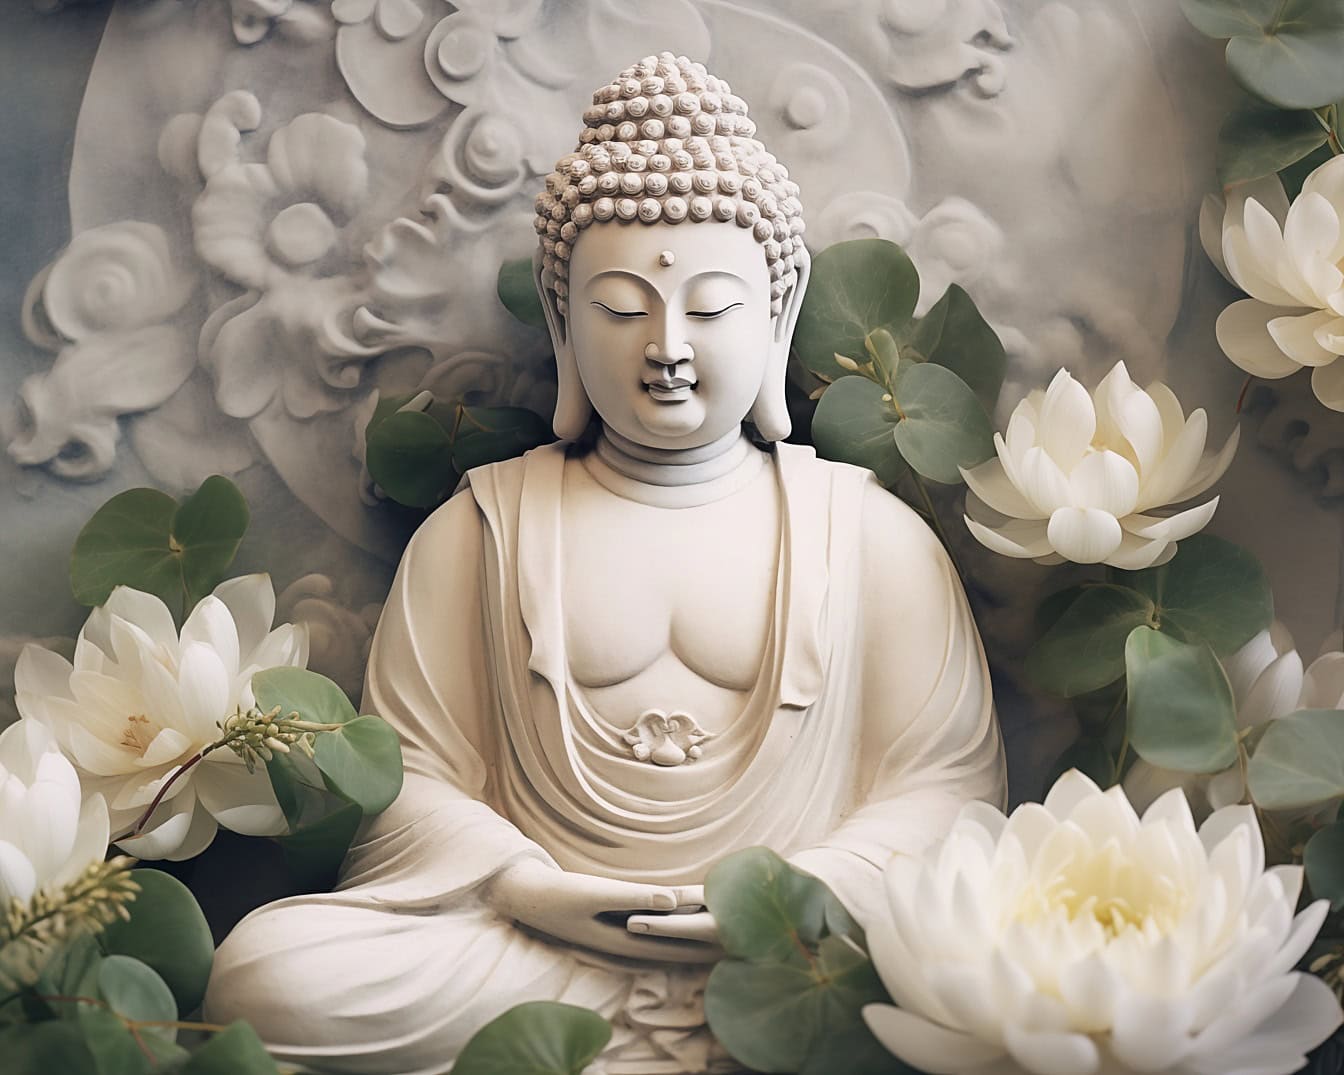 Posąg Buddy w medytacji transcendentalnej otoczony kwiatami lotosu przedstawiający zen jako filozofię duchową